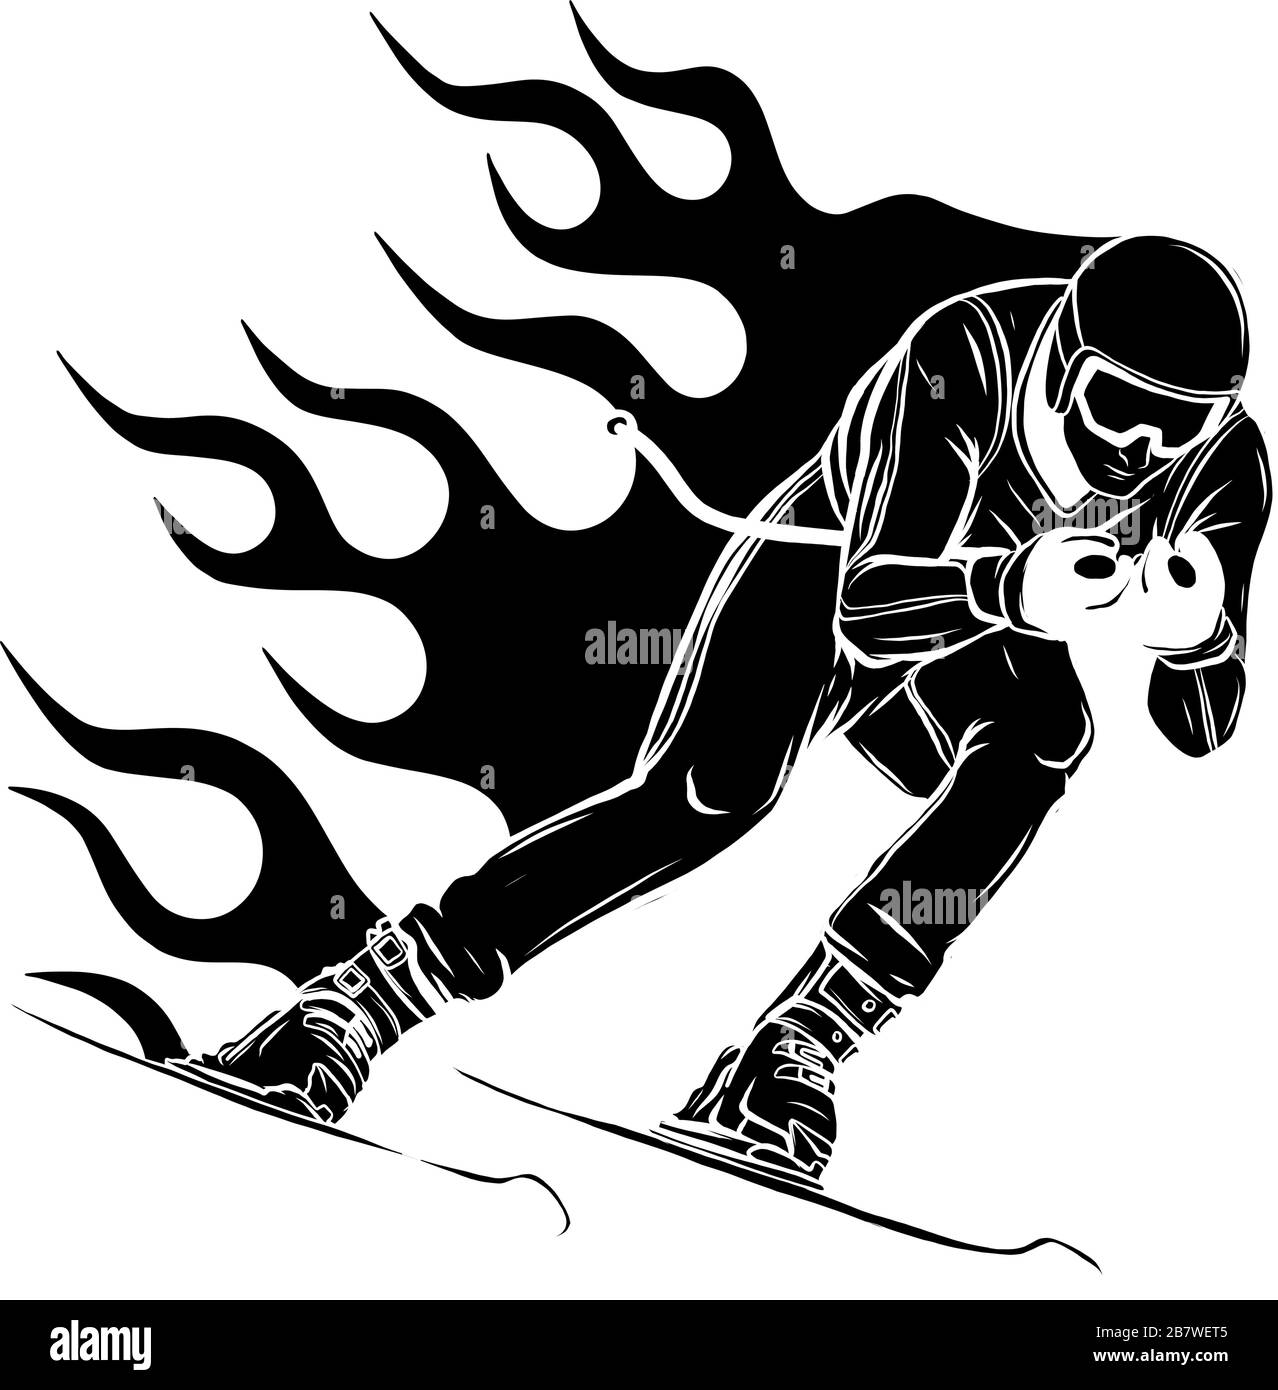 Mountain skier speeding down slope. Vector sport silhouette. Stock Vector